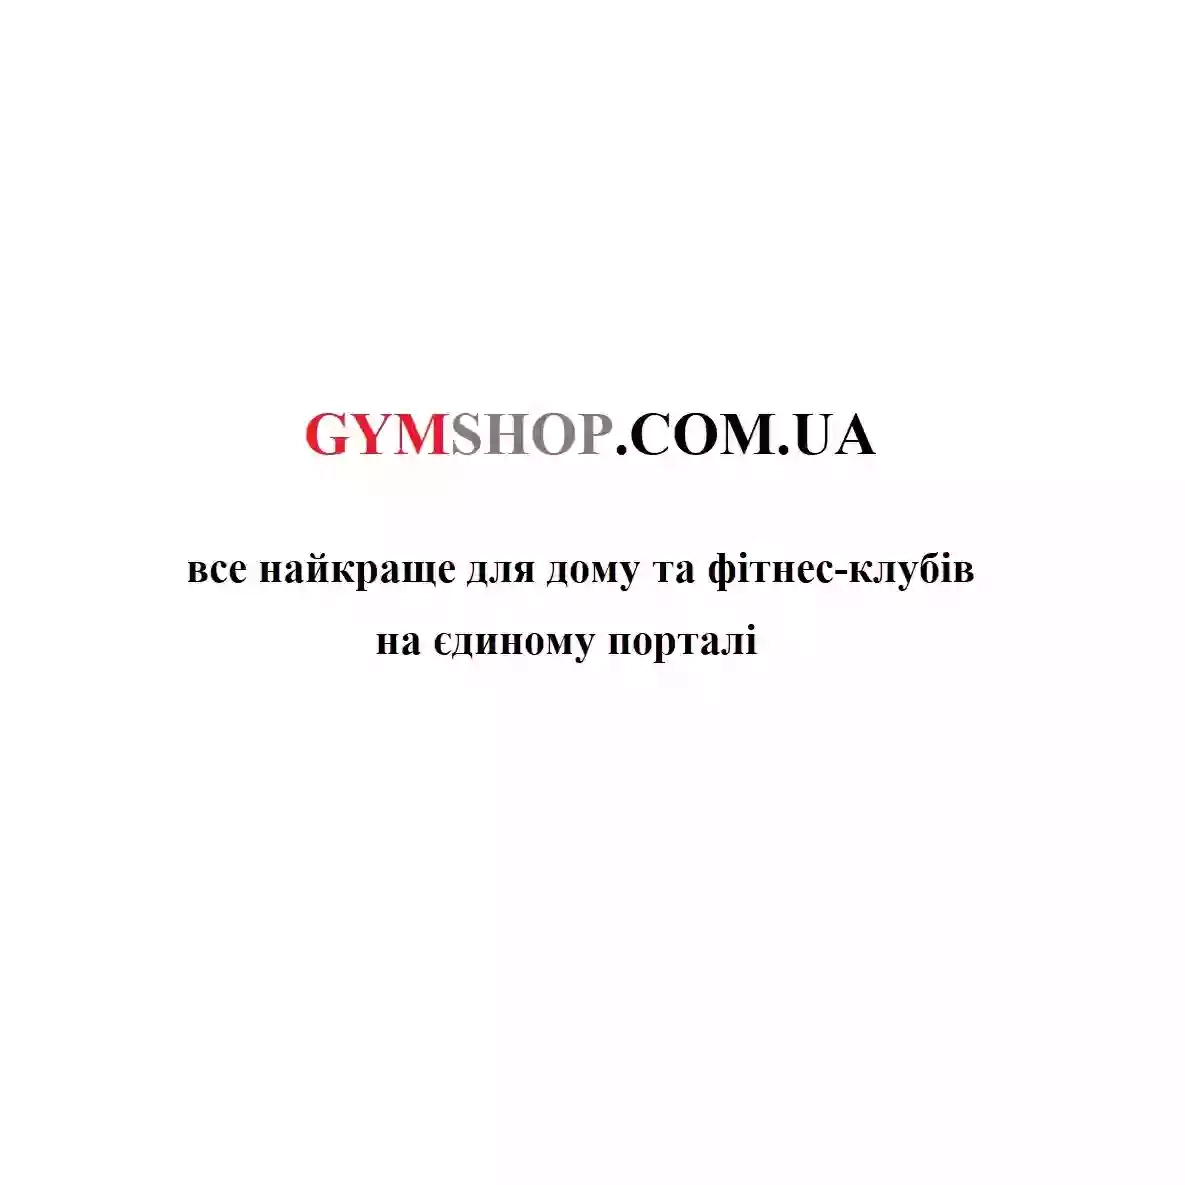 GYMSHOP.COM.UA